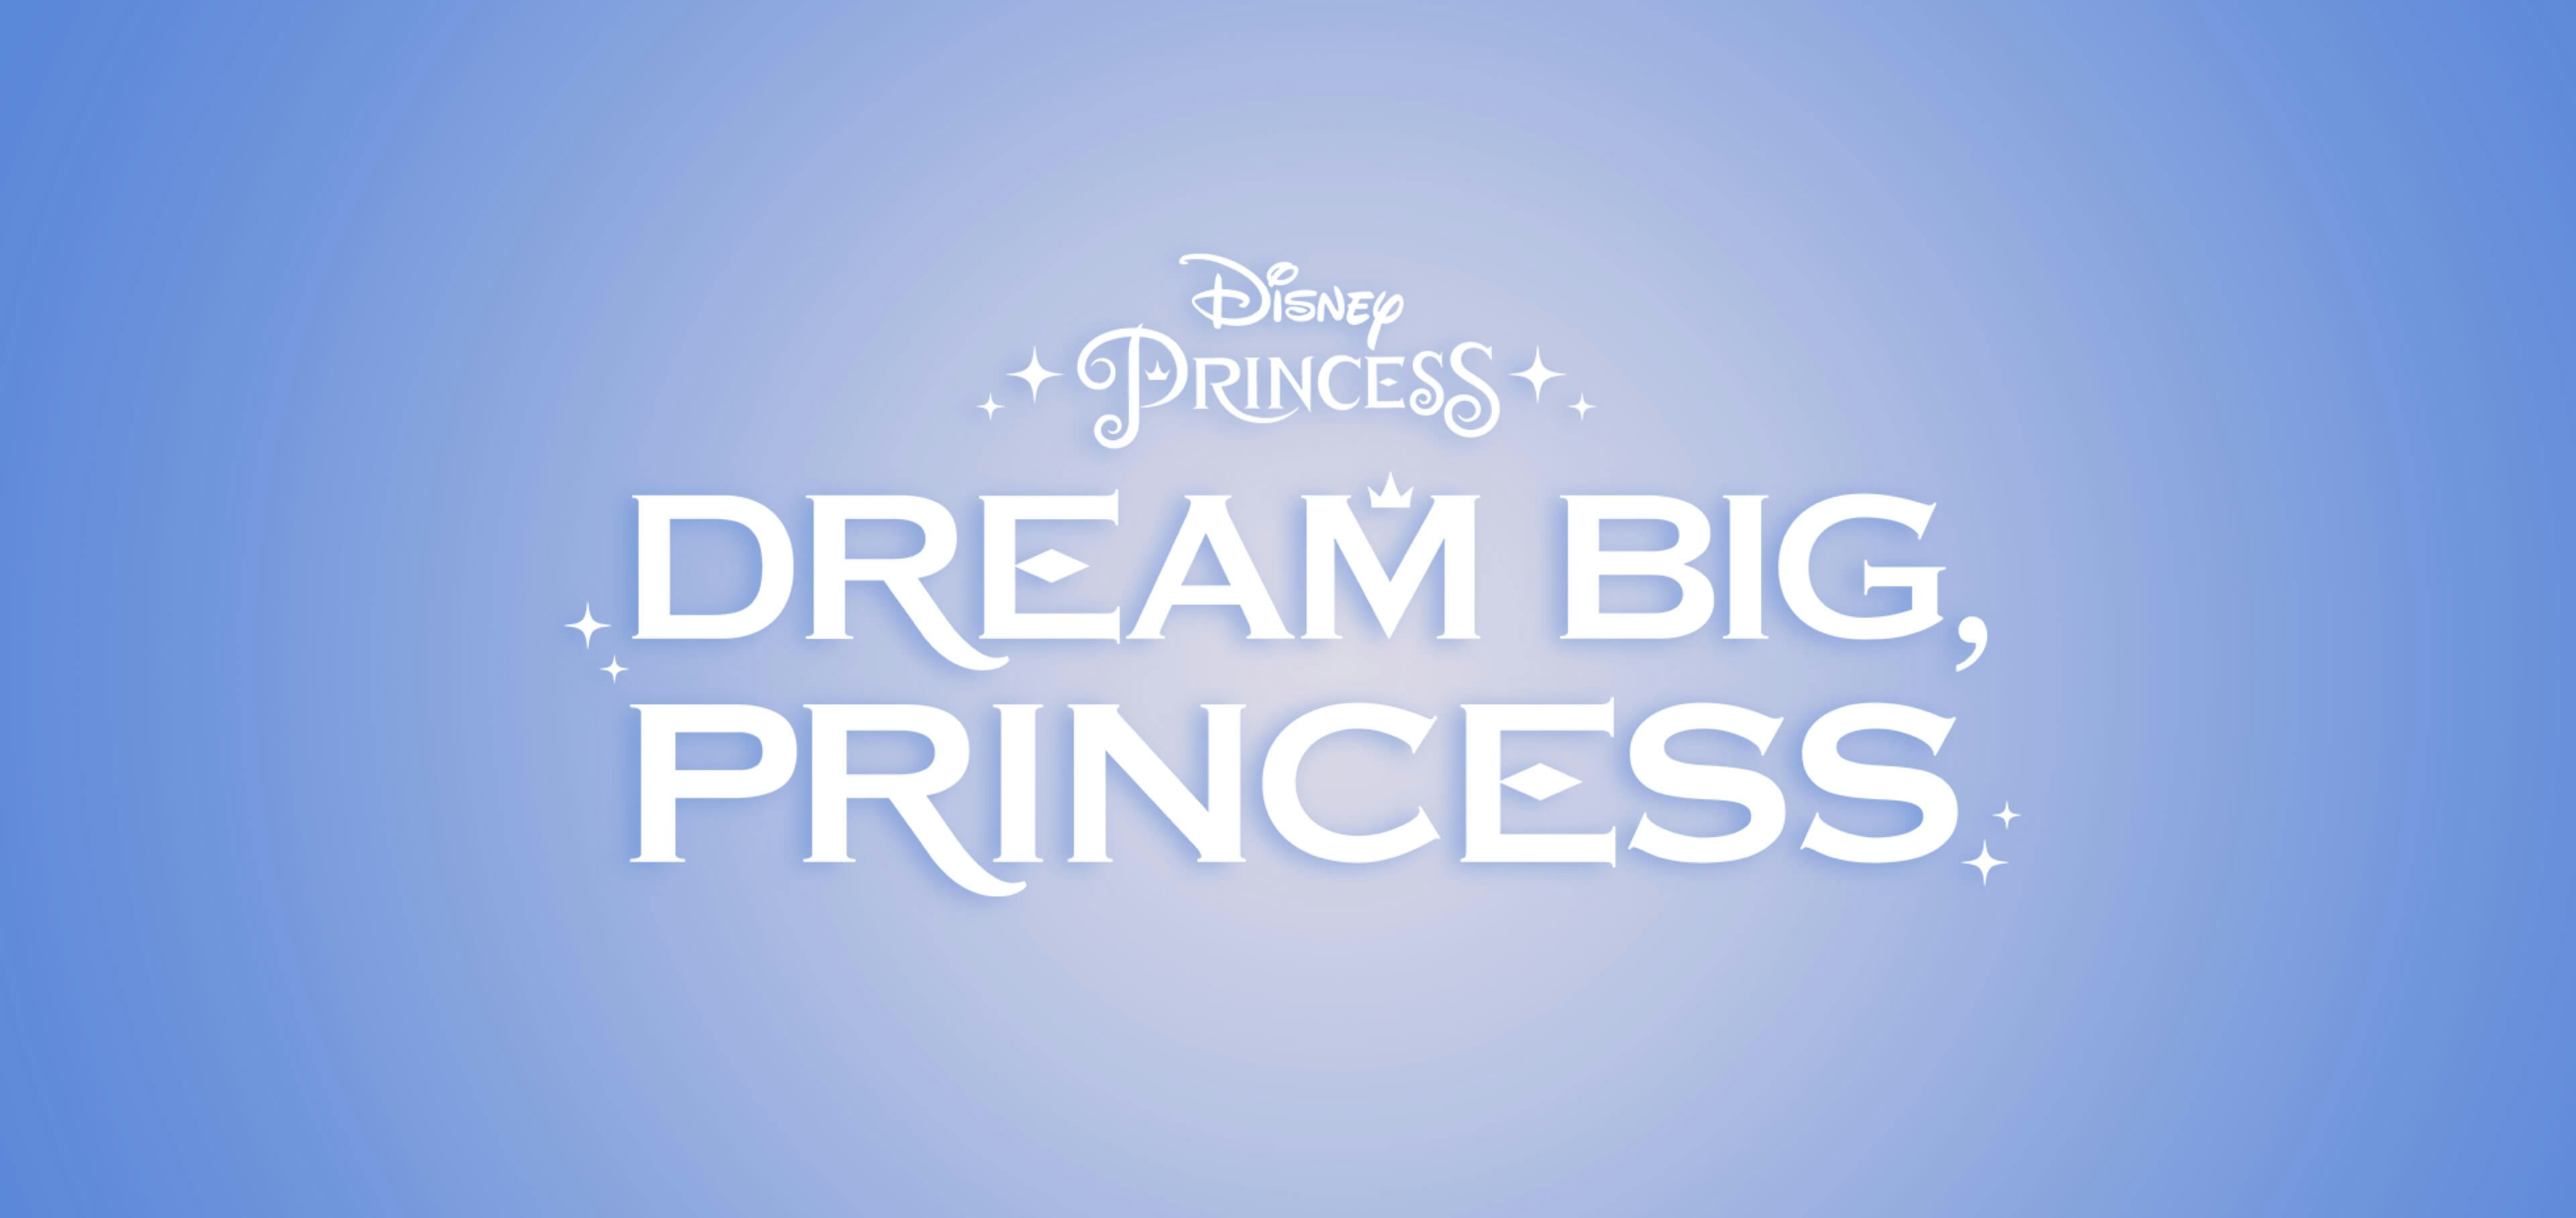 Dream big, princess